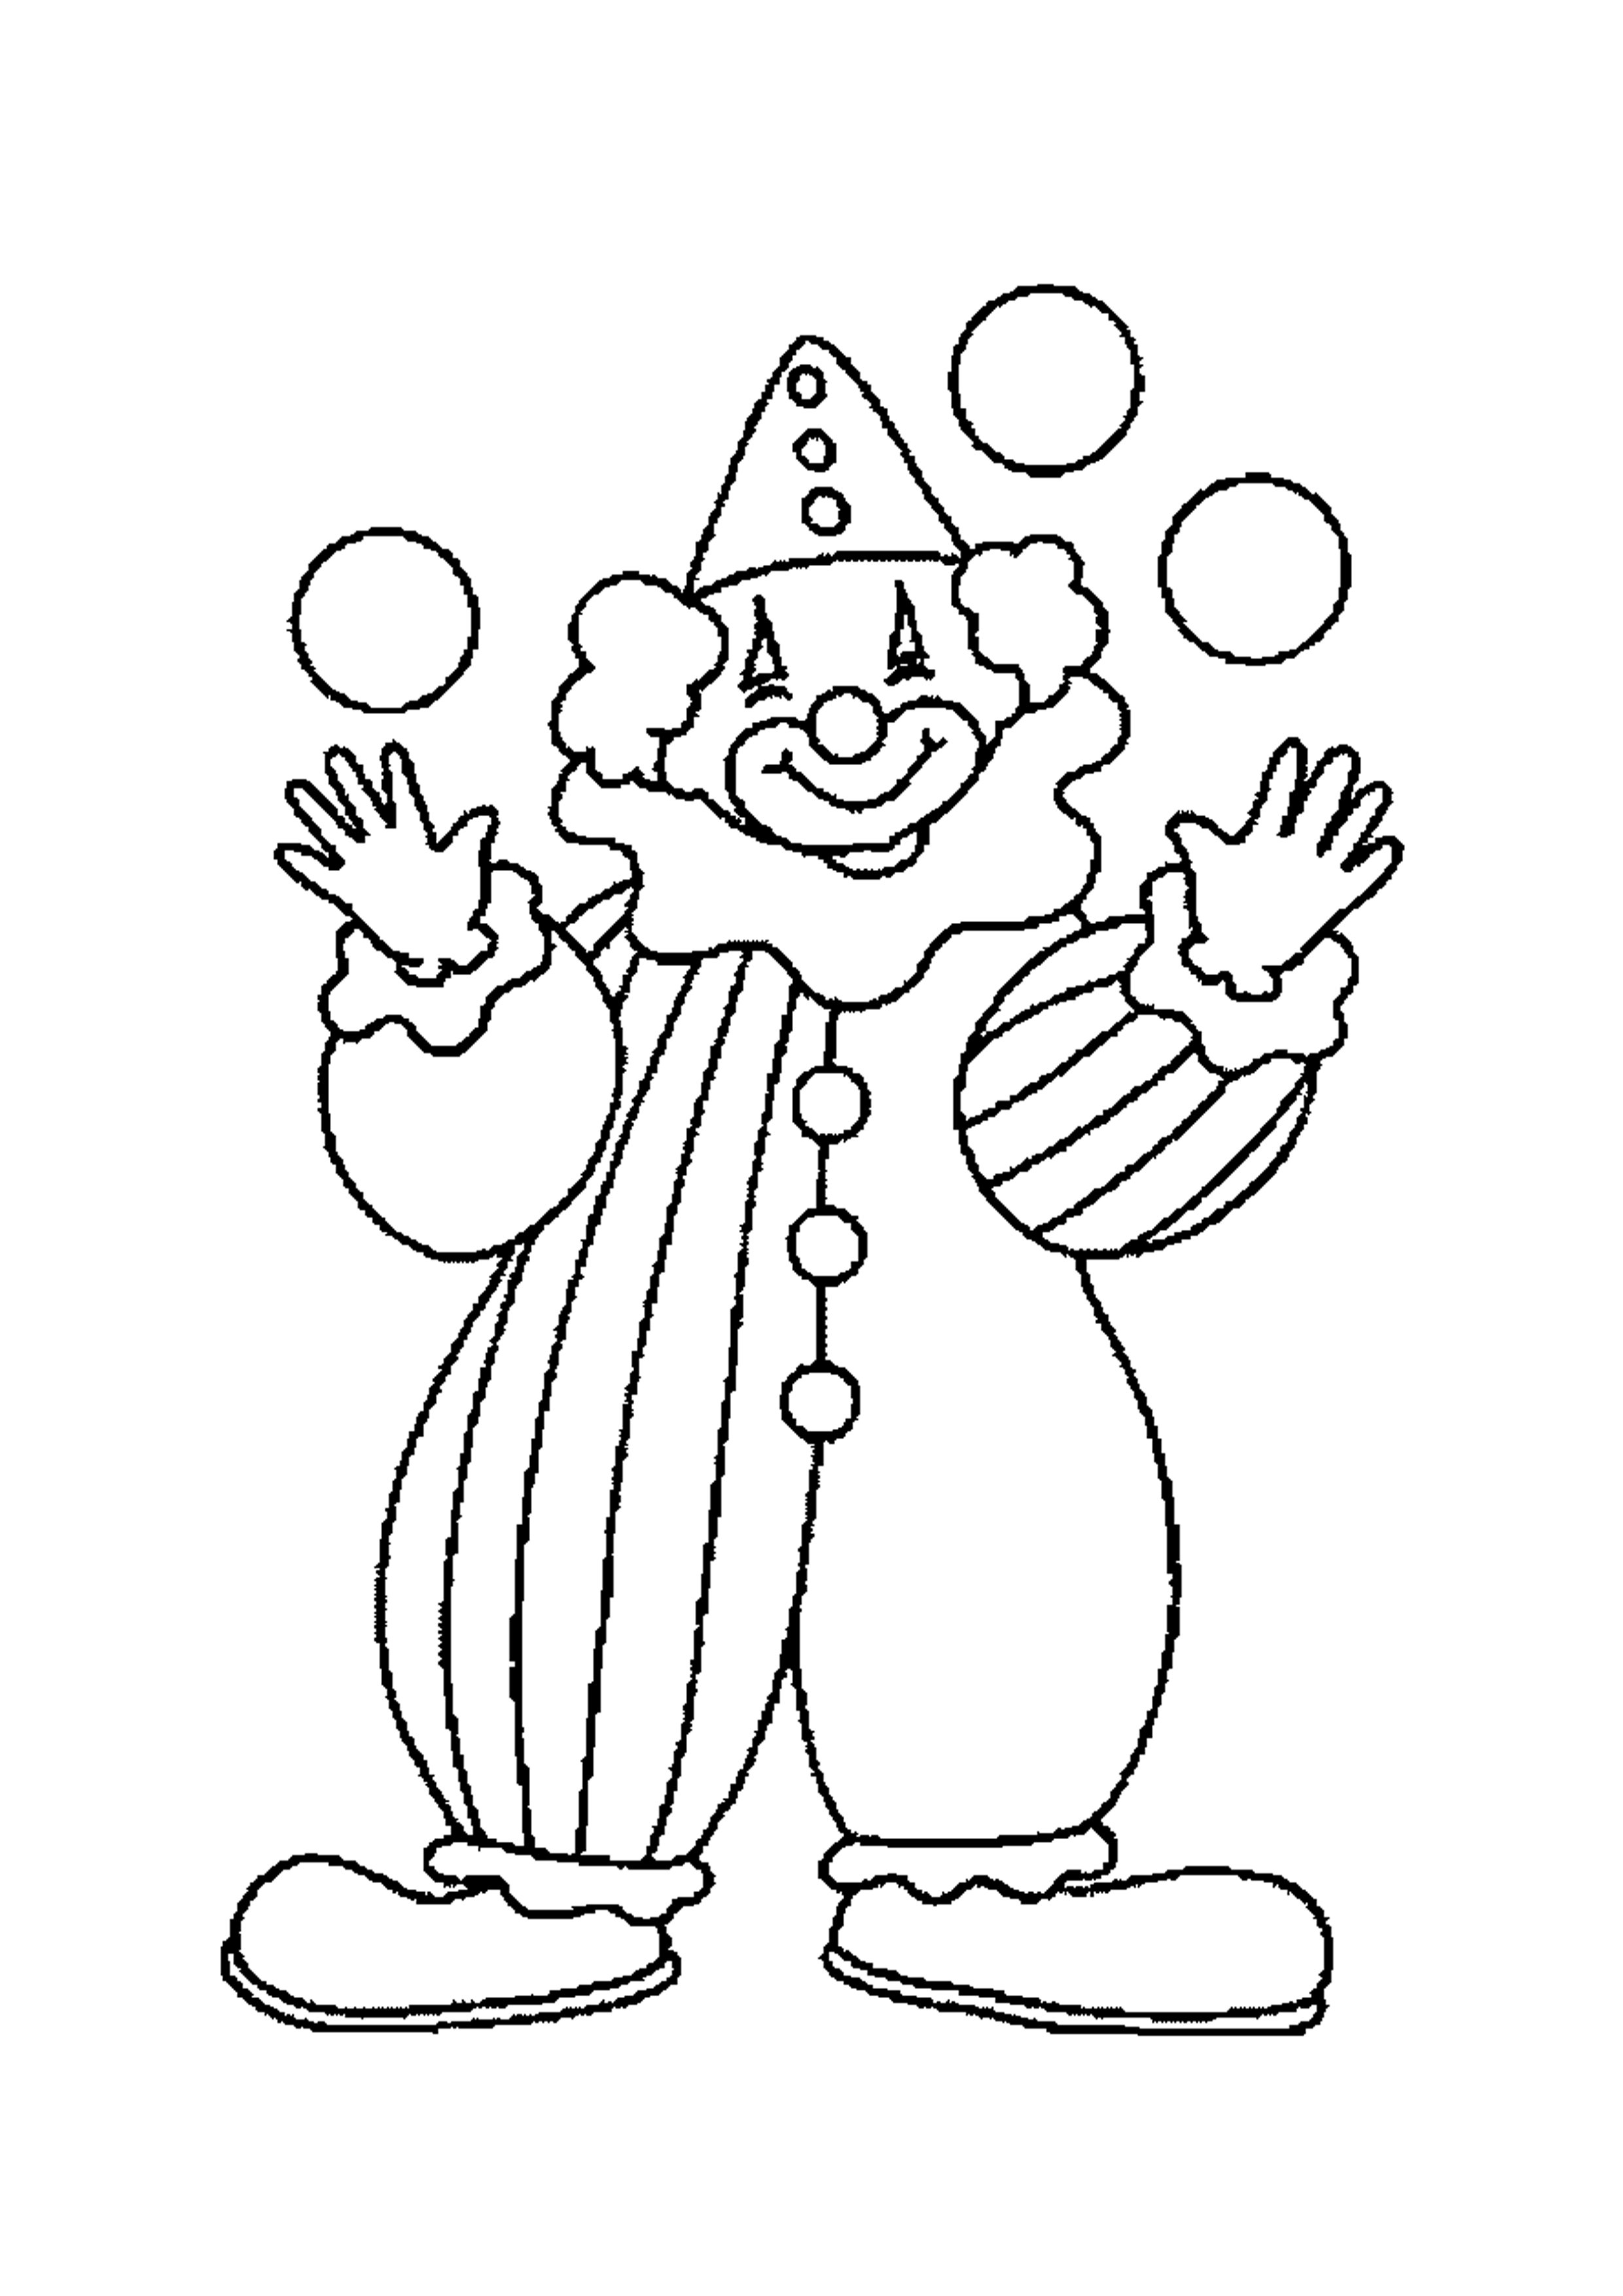 Клоун раскраска для детей 4 5 лет. Клоун жонглер раскраска. Клоун раскраска для детей. Клон раскраска для детей. Веселый клоун раскраска.